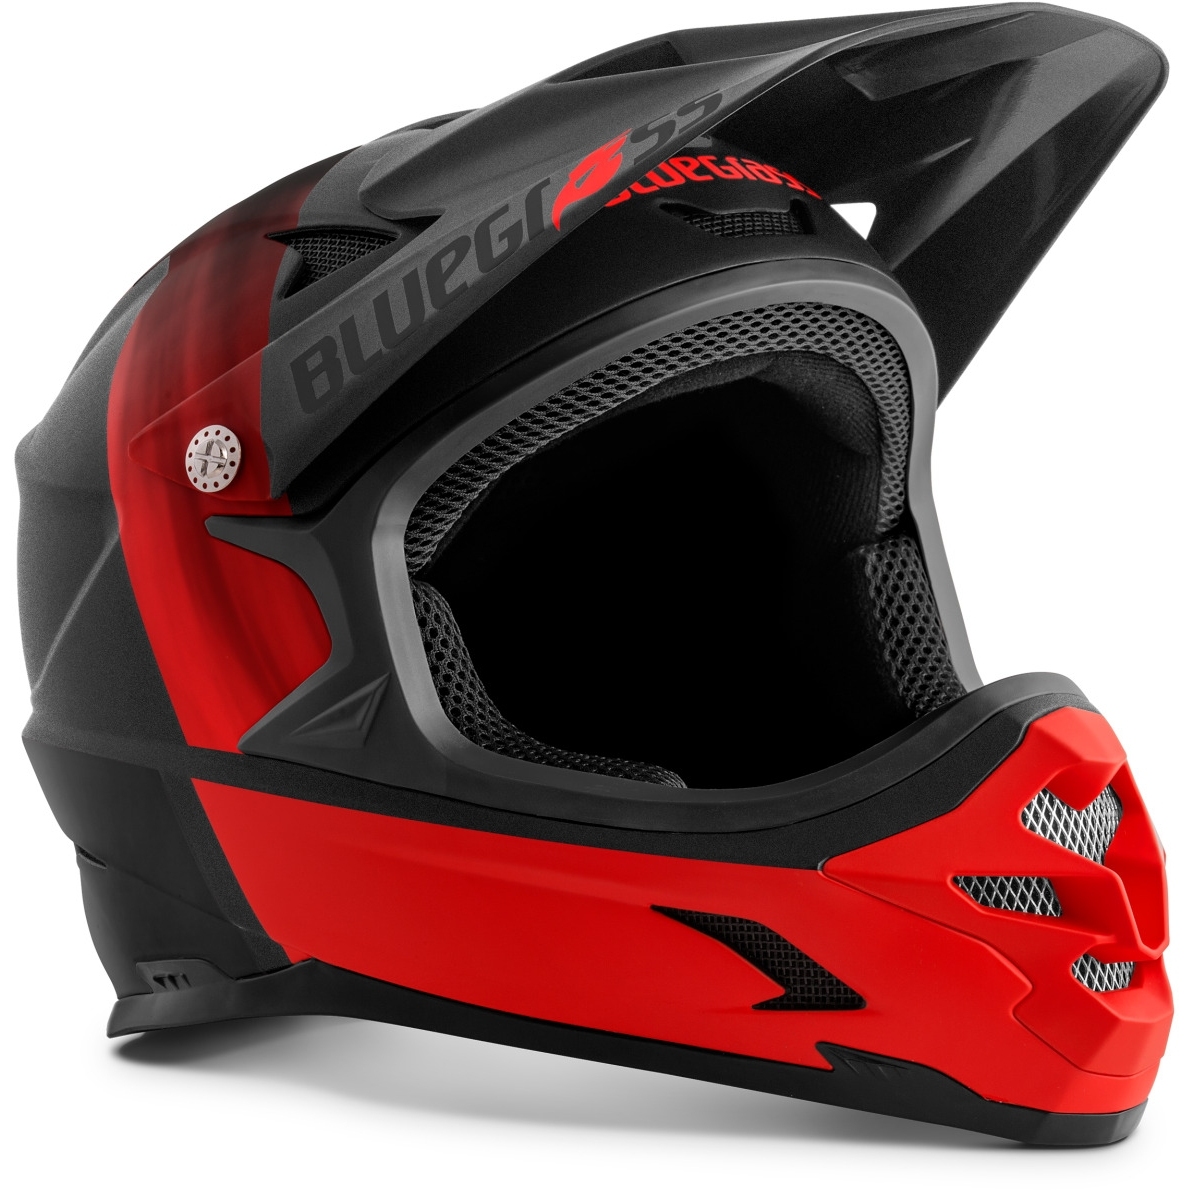 Productfoto van Bluegrass Intox Fullface Bike Helmet - black red / matt